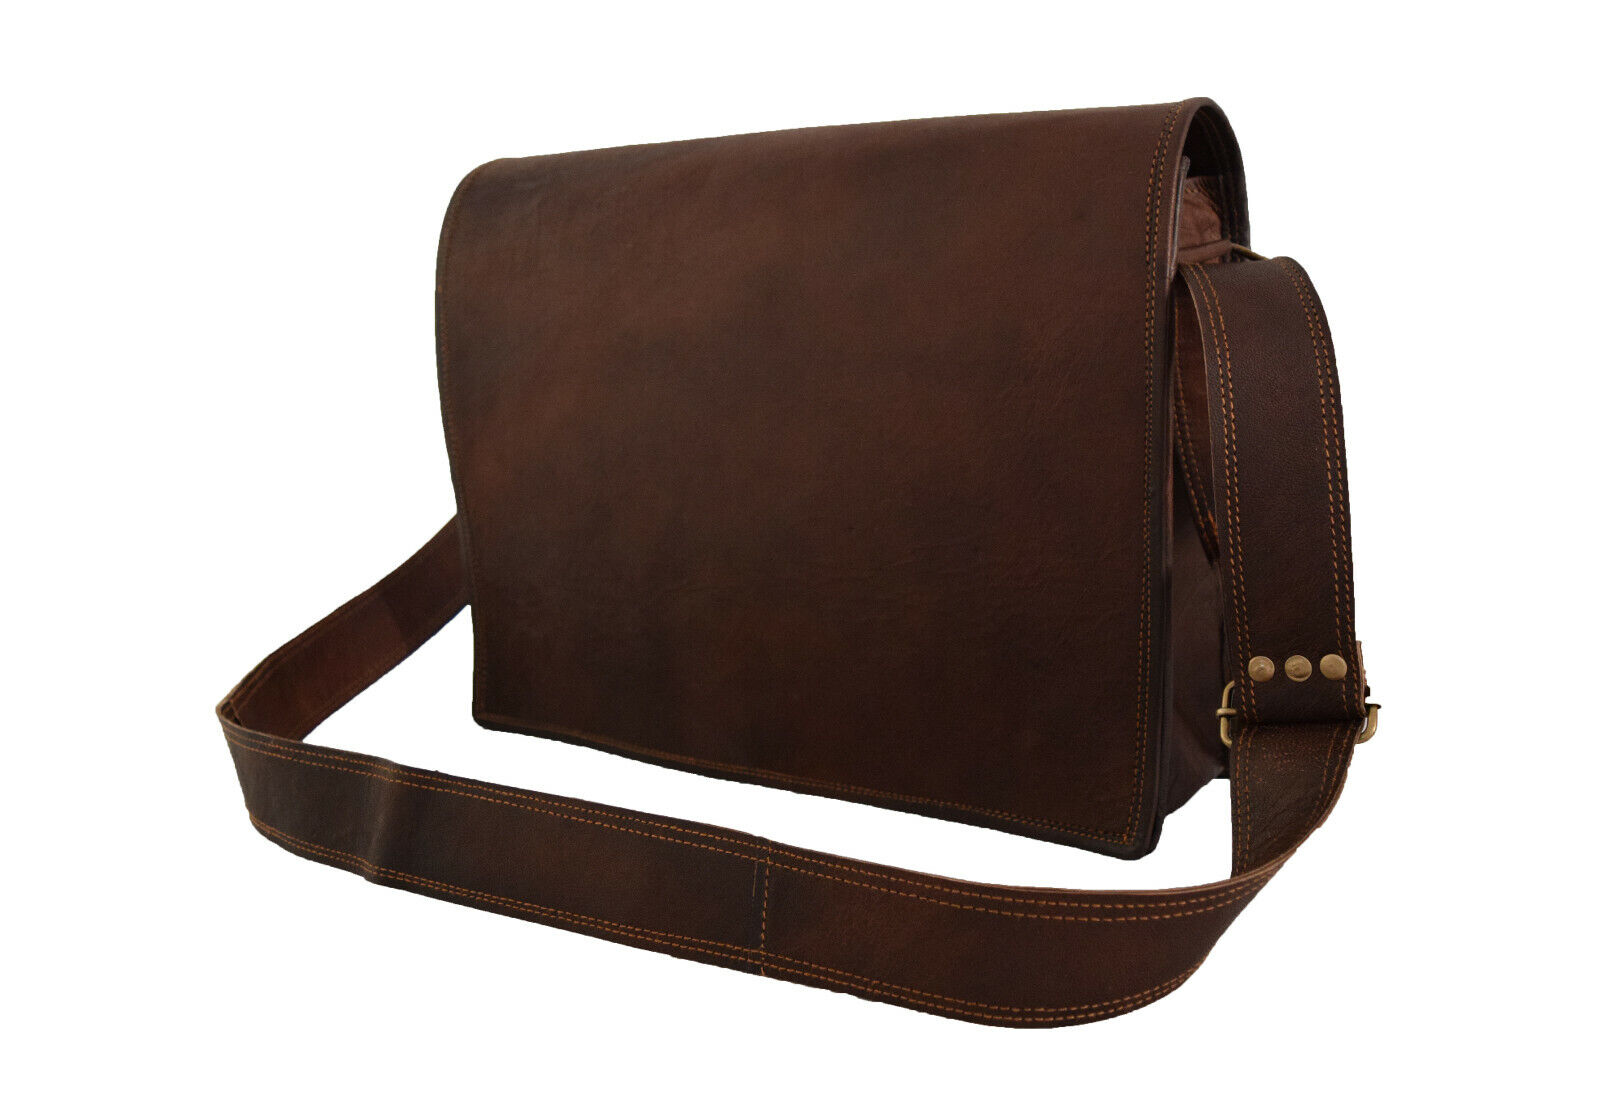 15 In Vintage Leather Messenger Bag Laptop Satchel Office School Shoulder Bags